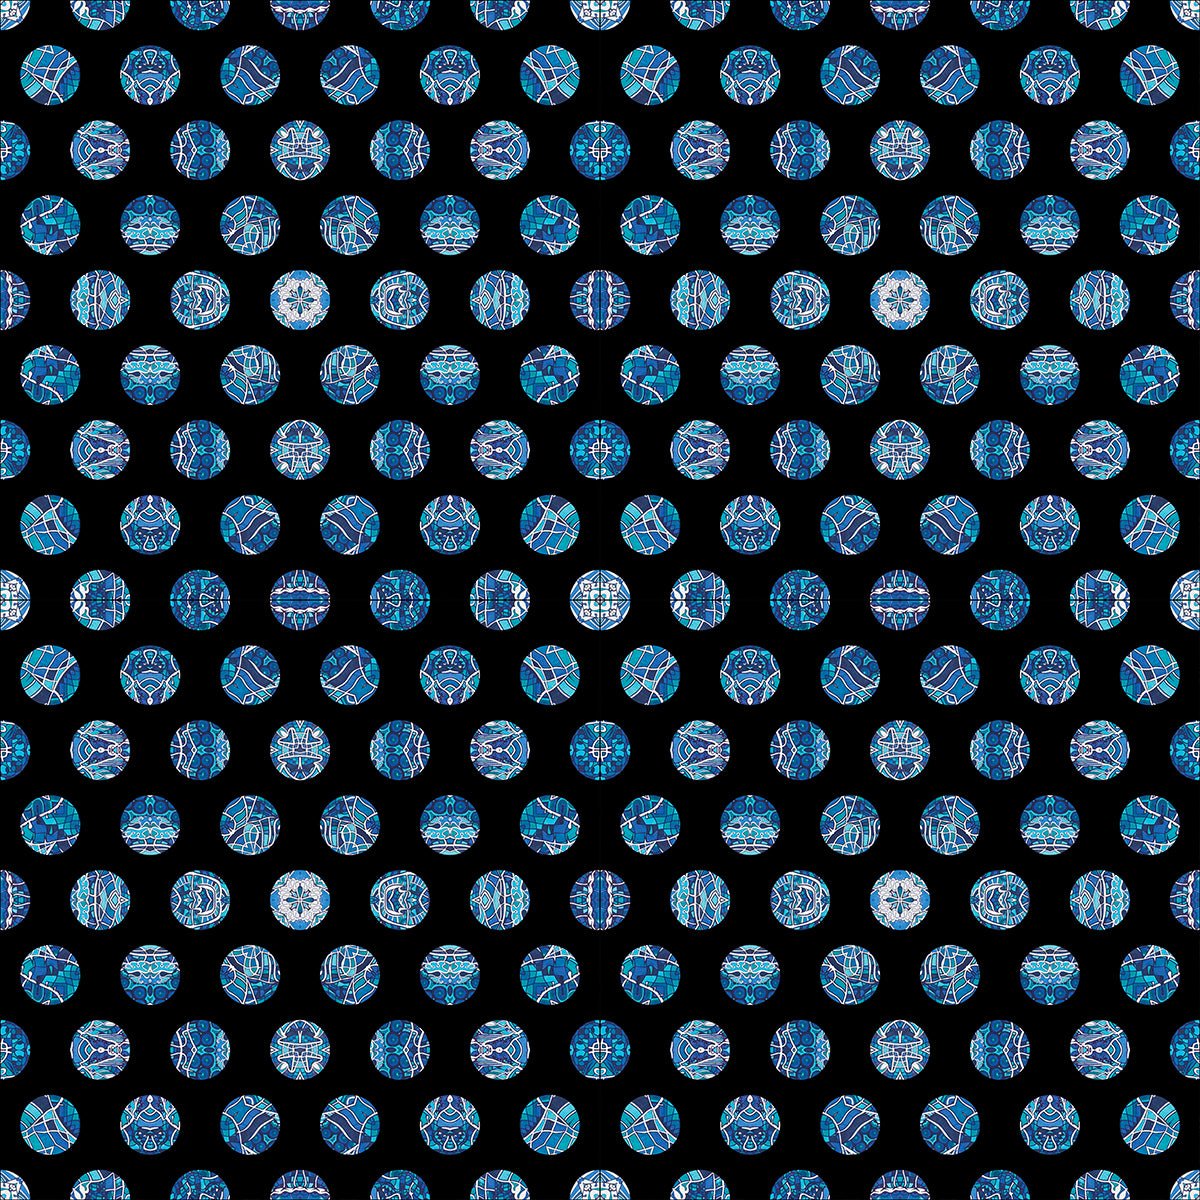 Decke • Wassergeister – Punkte, blau, schwarz, weiß - Wonderwazek